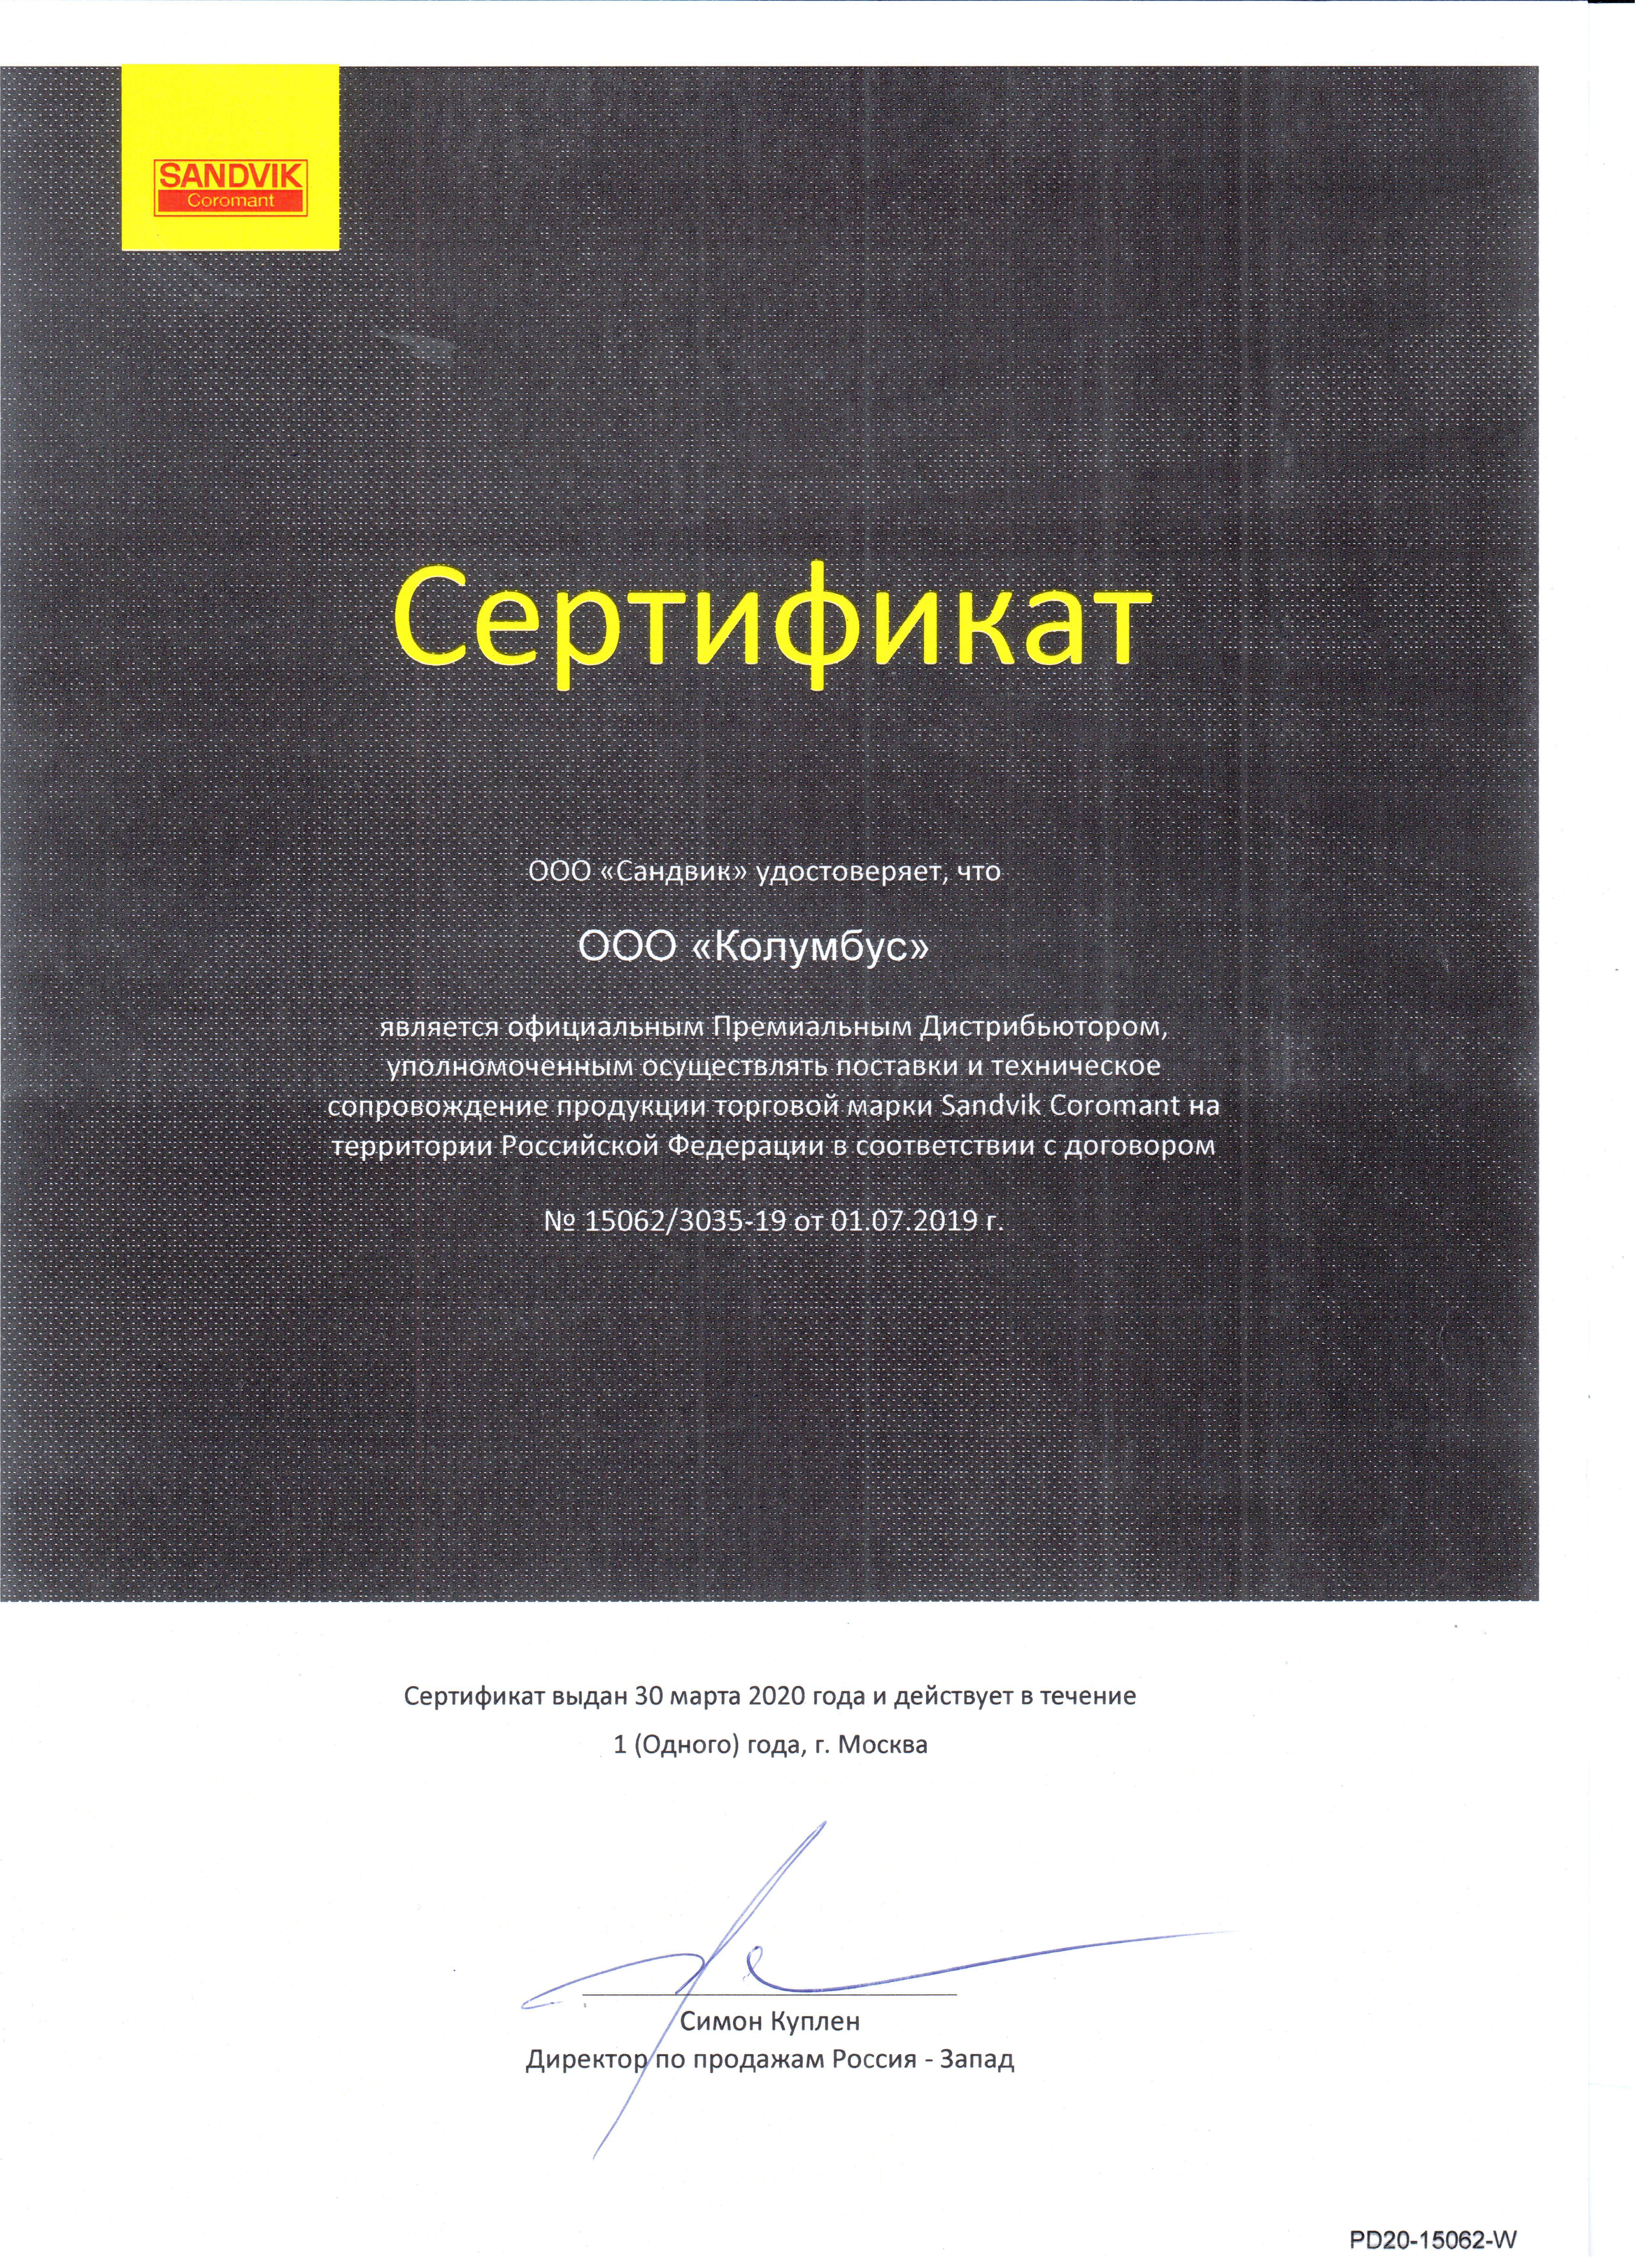 Сертификат Sandvik Coromant